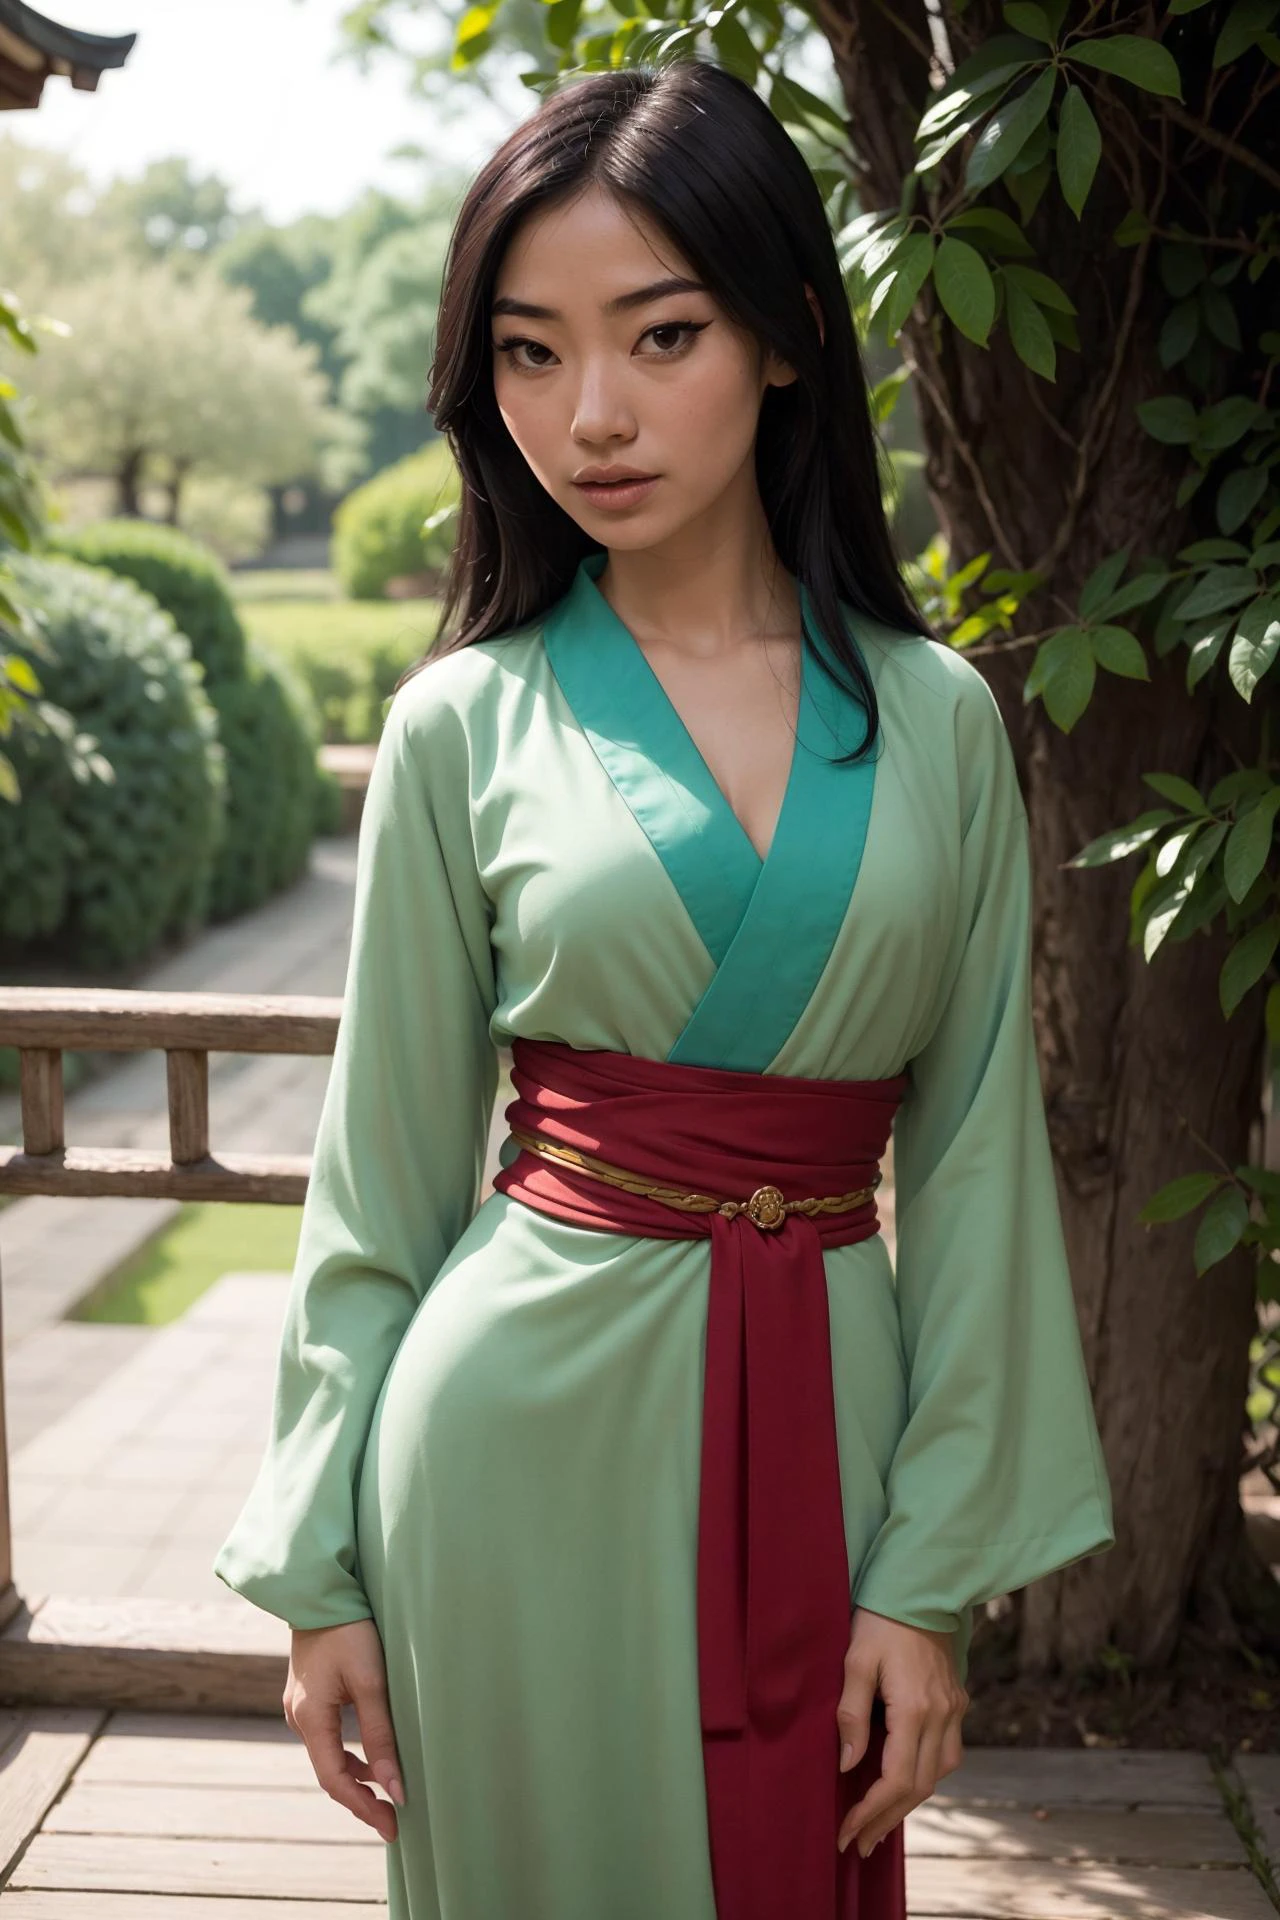 foto de Fa Mulan, uma linda mulher, (magrelo:1.2), ajustar, pele perfeita, cabelo detalhado, rosto detalhado, olhos lindos,
((mangas compridas, vestido verde, faixa vermelha)),
(fundo desfocado do jardim de Suzhou, cênico), (pose sexy em pé), (Vista da frente),
Erótico, elegante, Sensual, sedutor, (Obra de arte, melhor qualidade), (fotorrealista:1.4), corpo todo, iluminação perfeita, (melhor sombra),
(mulanwaifu, roupas japonesas, quimono:1.2), 